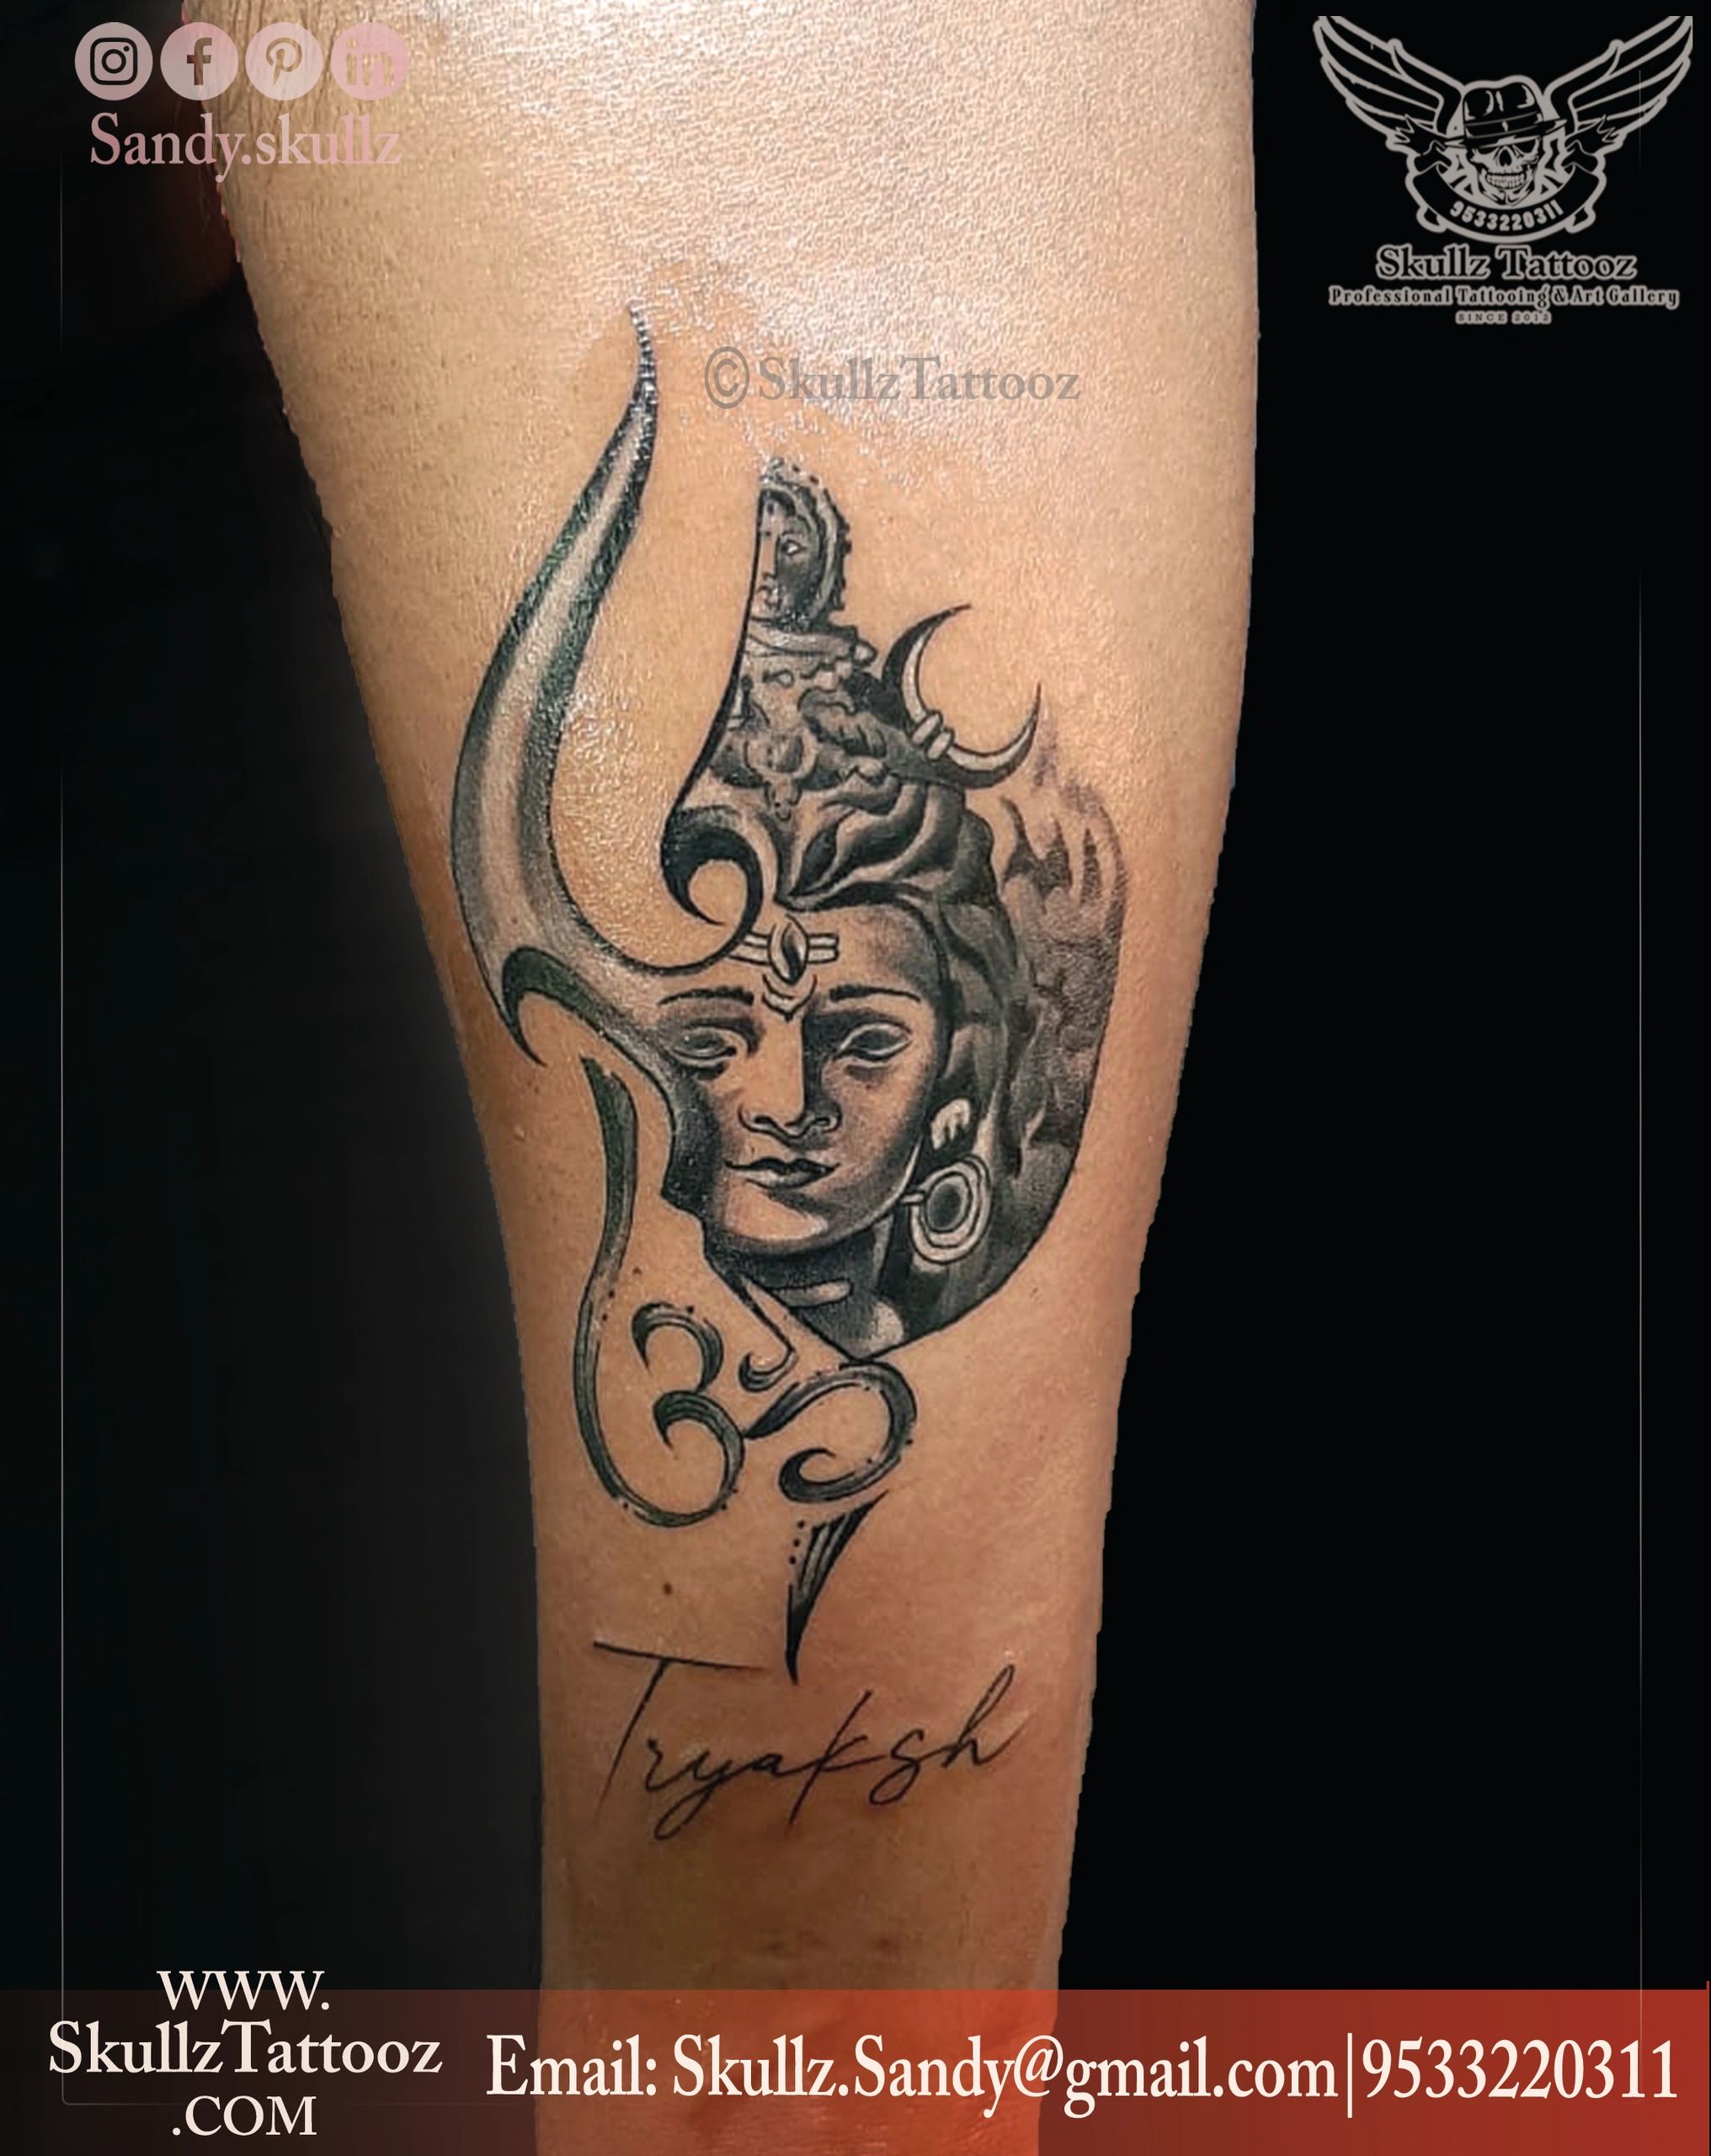 Tempoary Tattoowala Lord Shiv Full Hand Band Round Waterproof Temporary  Body Tattoo  Amazonin Beauty